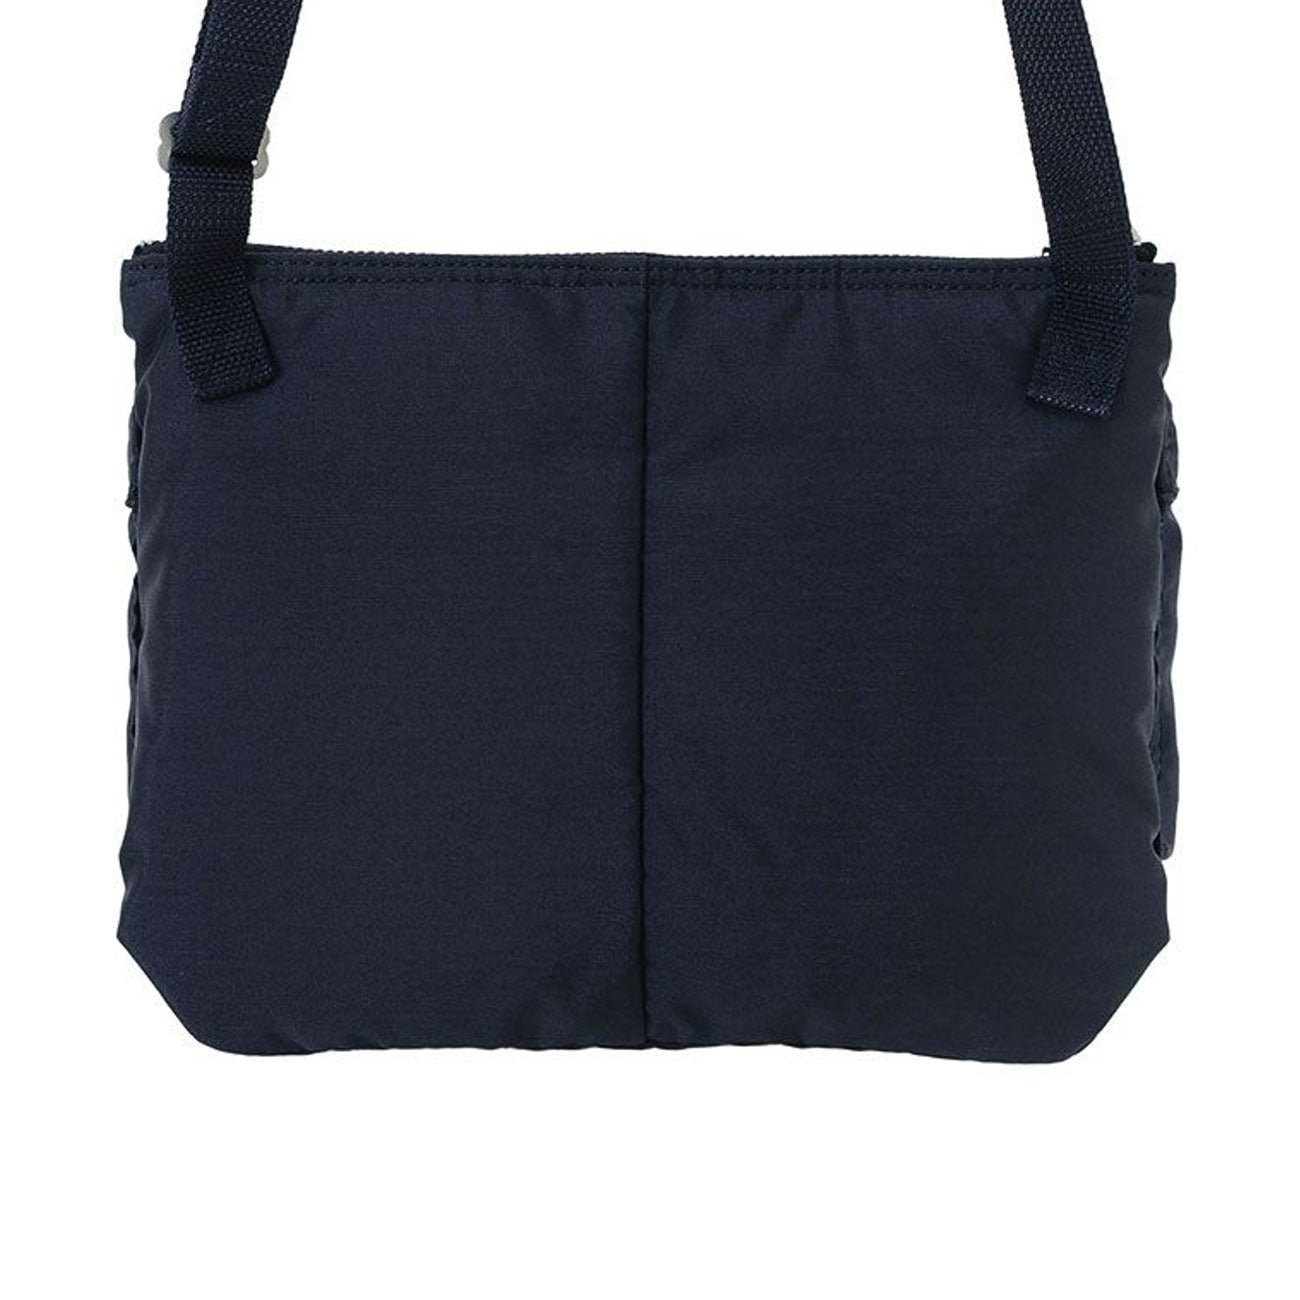 porter by yoshida force shoulder bag (navy) - 855-05458-50 - a 